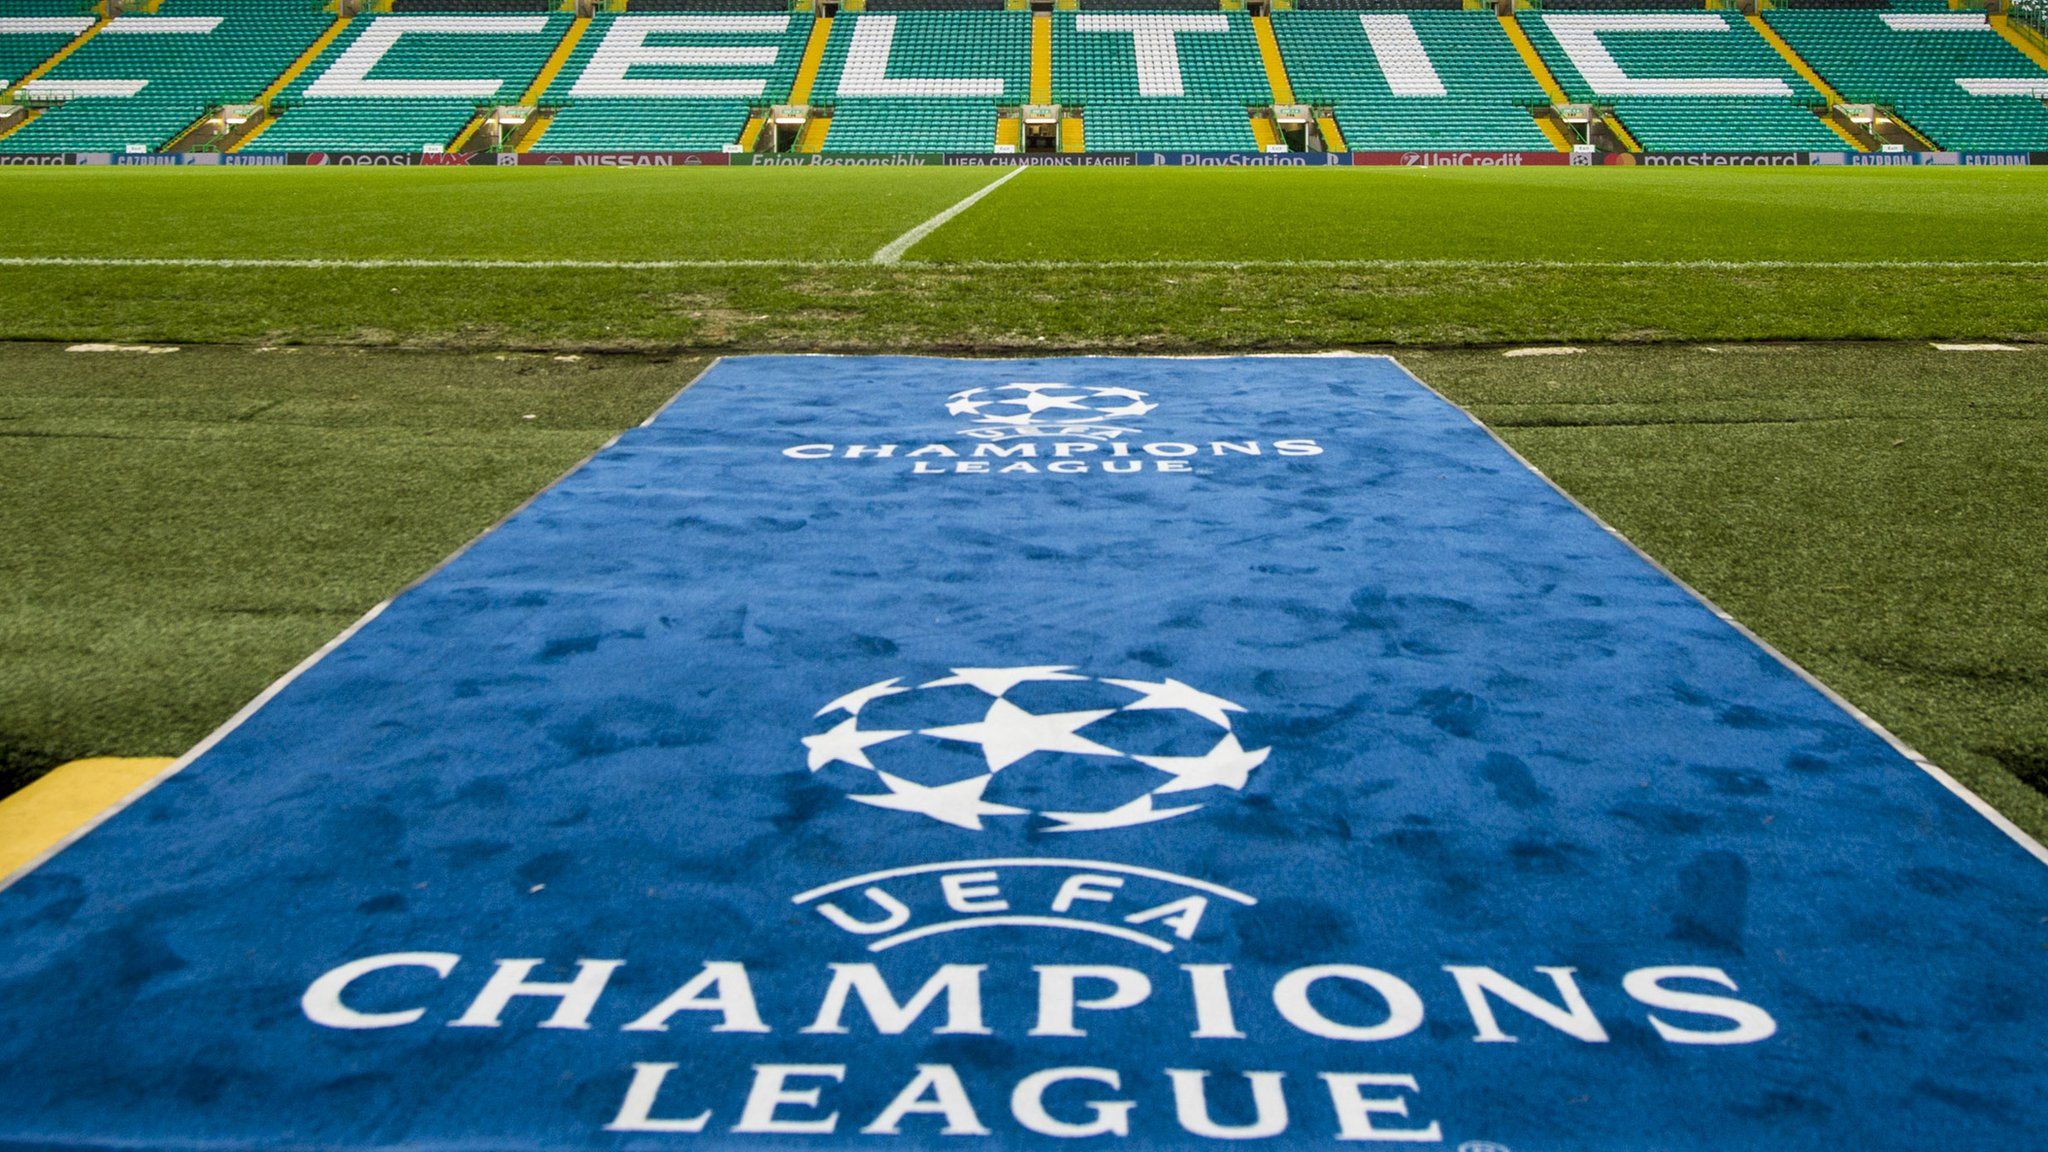 Champions League logo at Celtic Park